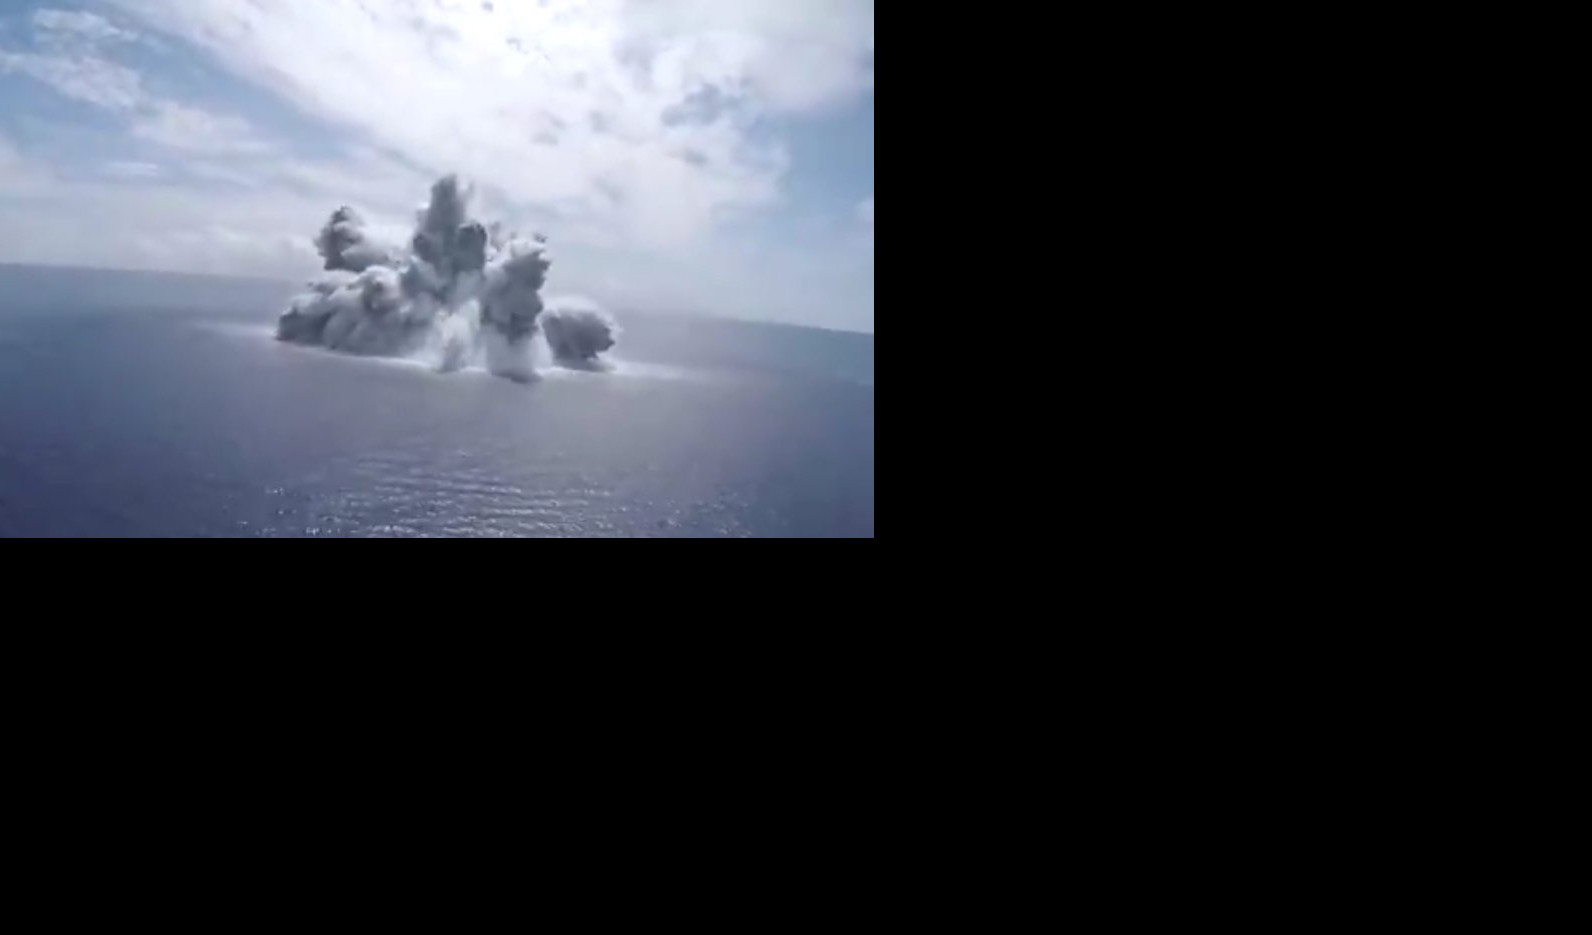 "ŠOK PROBA"! Američka mornarica izazvala zemljotres kod Floride, aktivirano nekoliko hiljada tona eksploziva! /VIDEO/